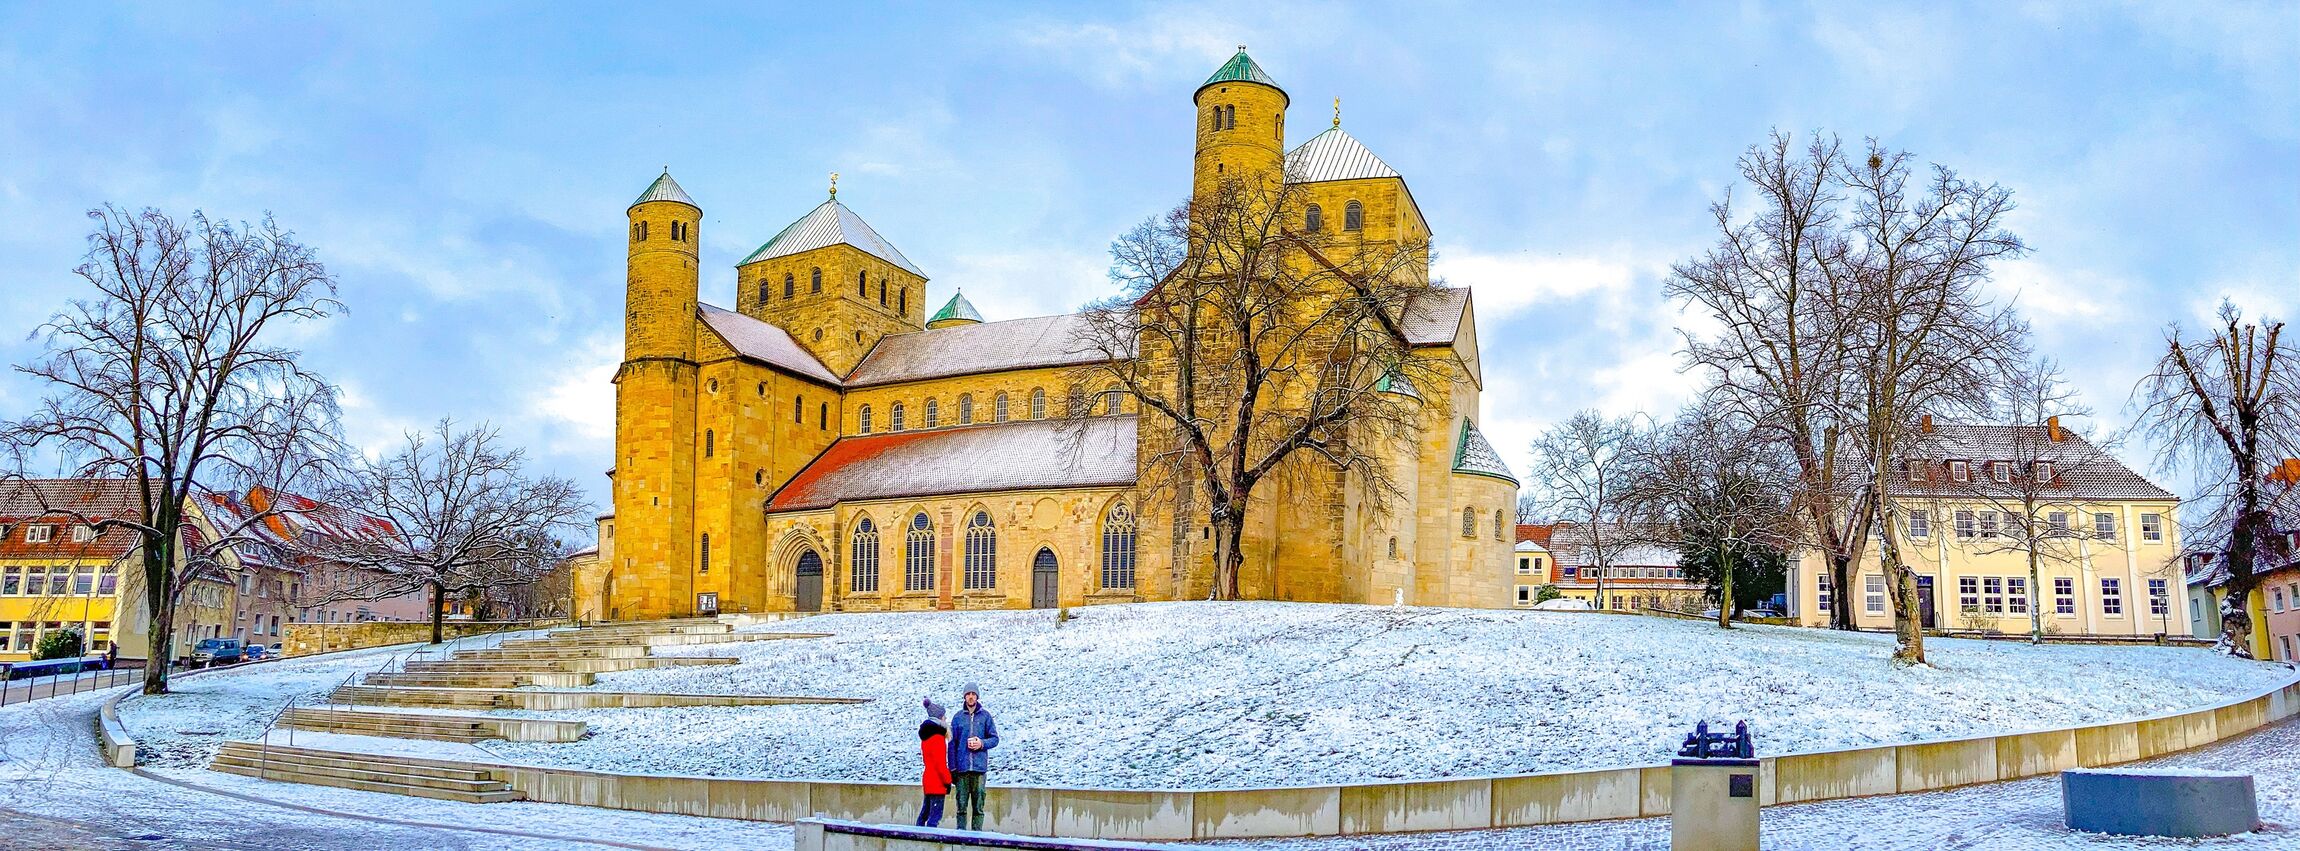 Die Michaeliskirche im Winter.